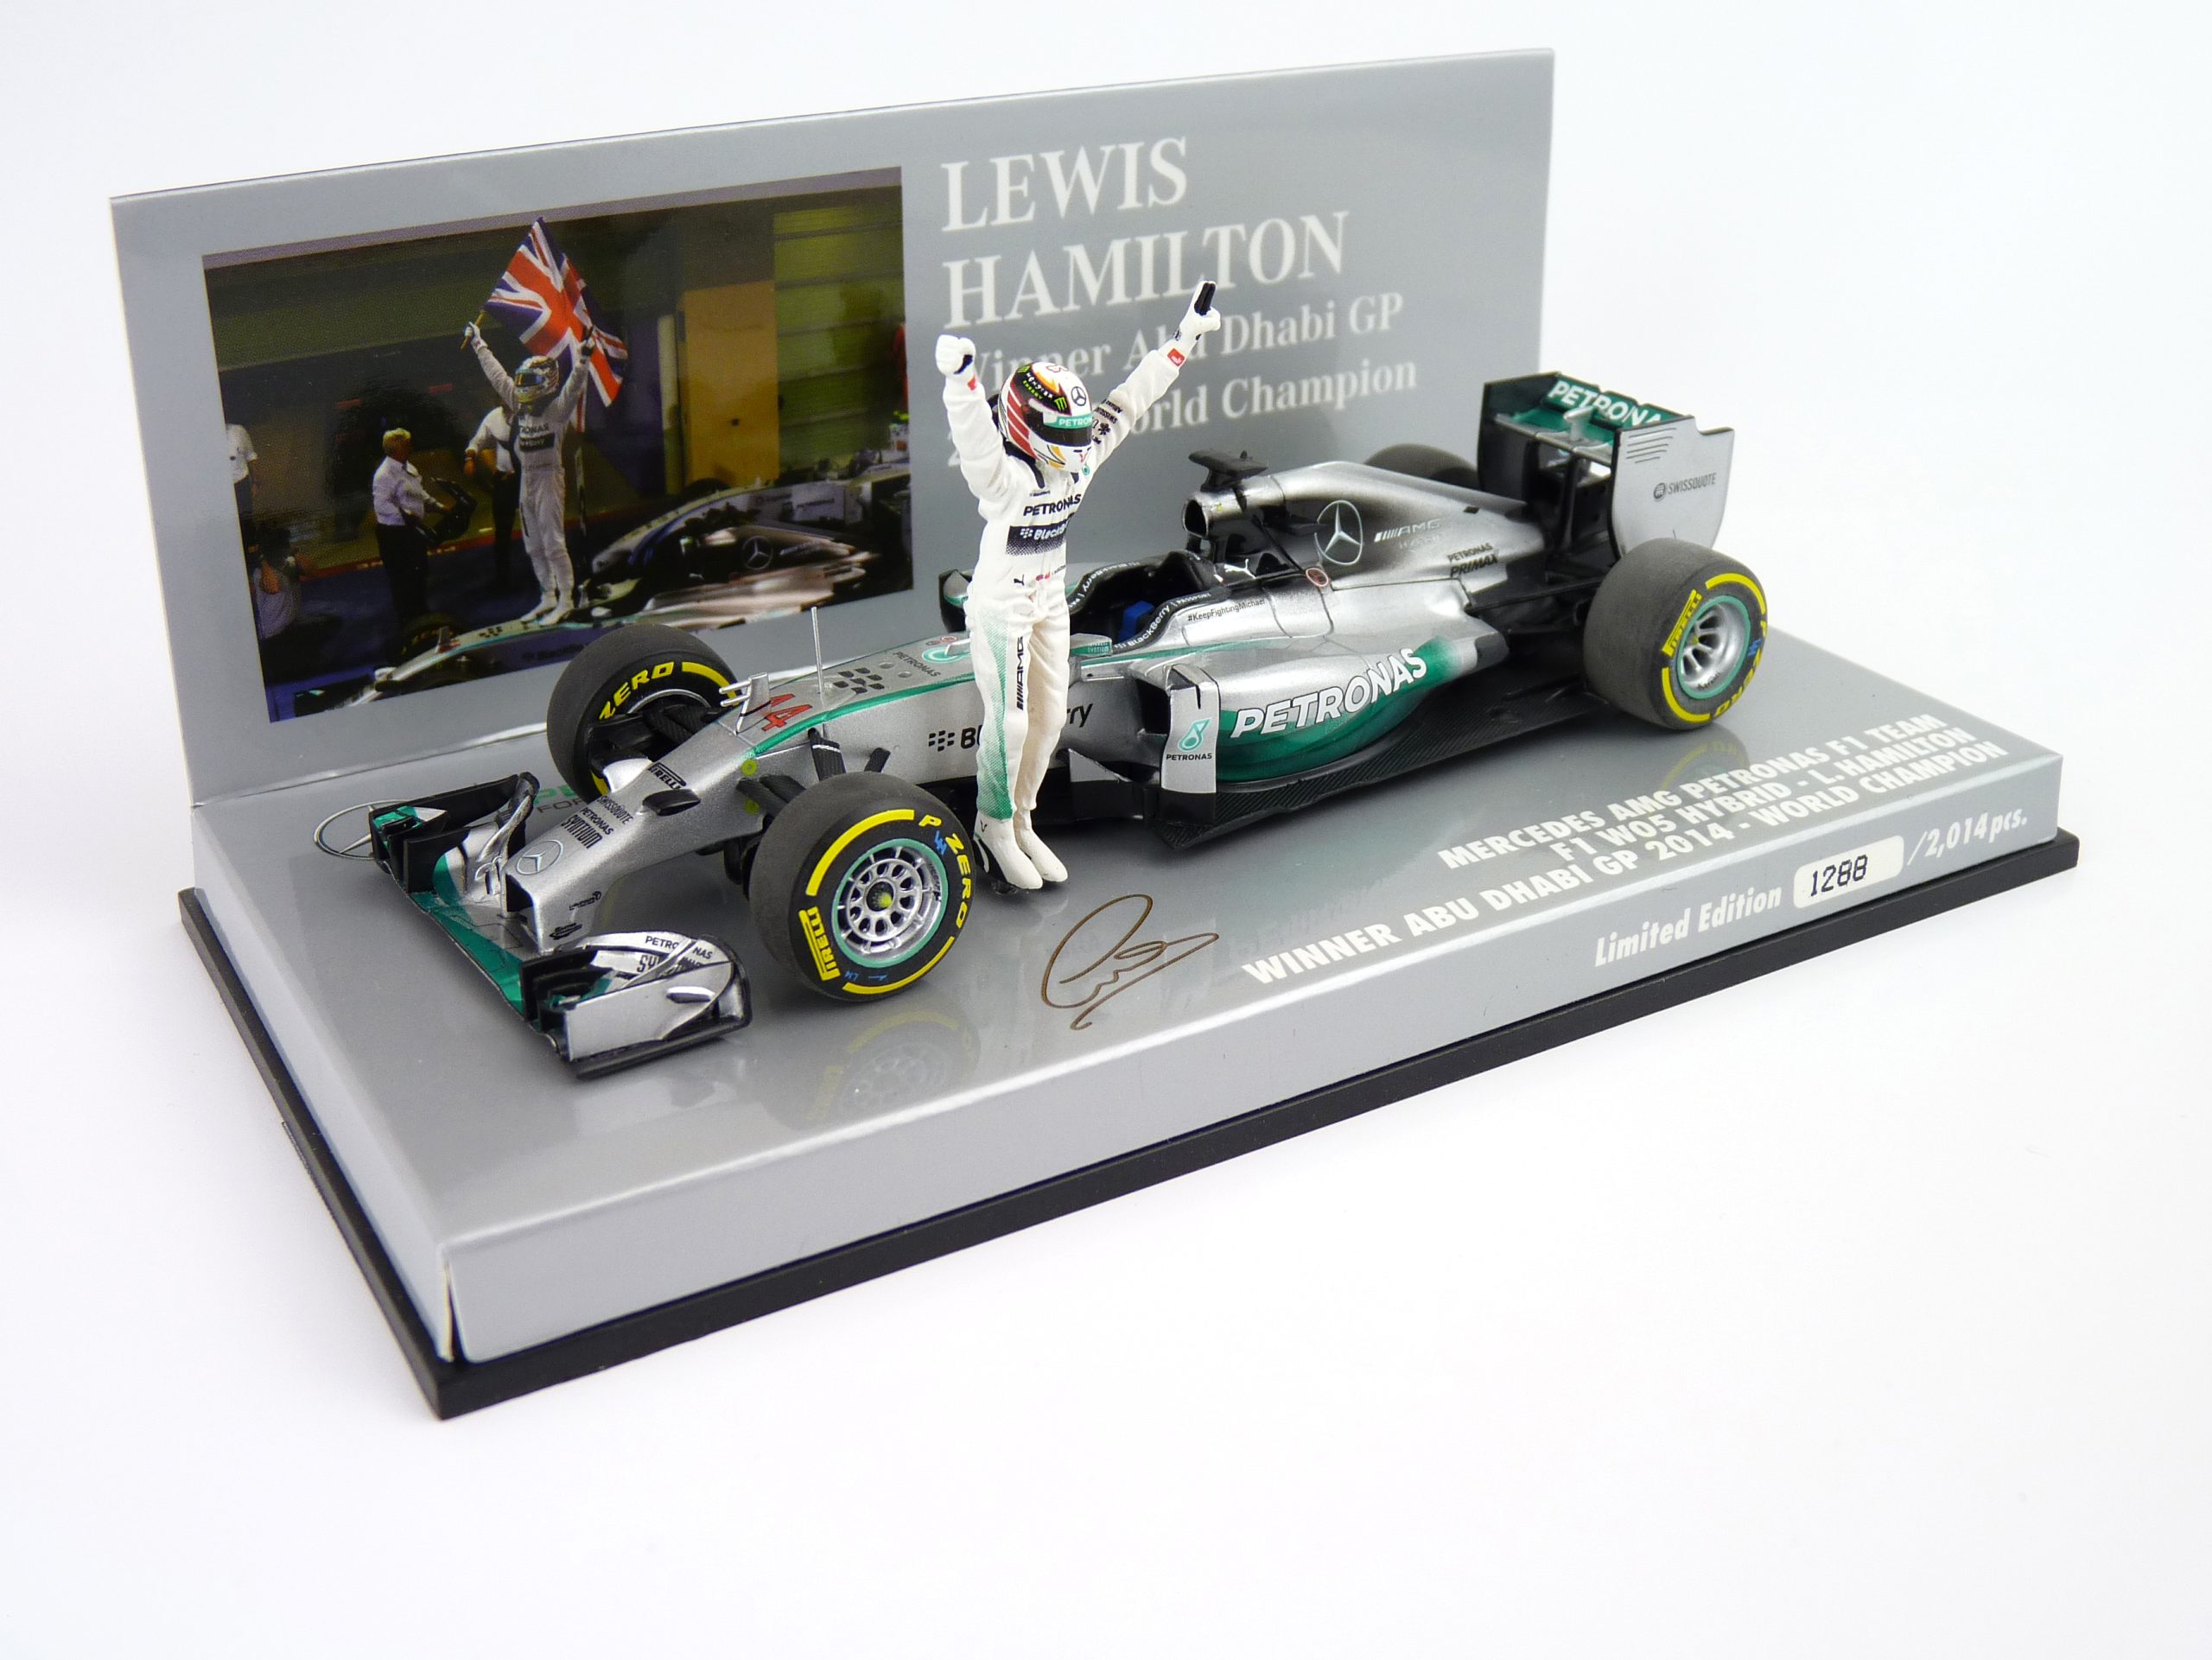 2014 - Lewis Hamilton